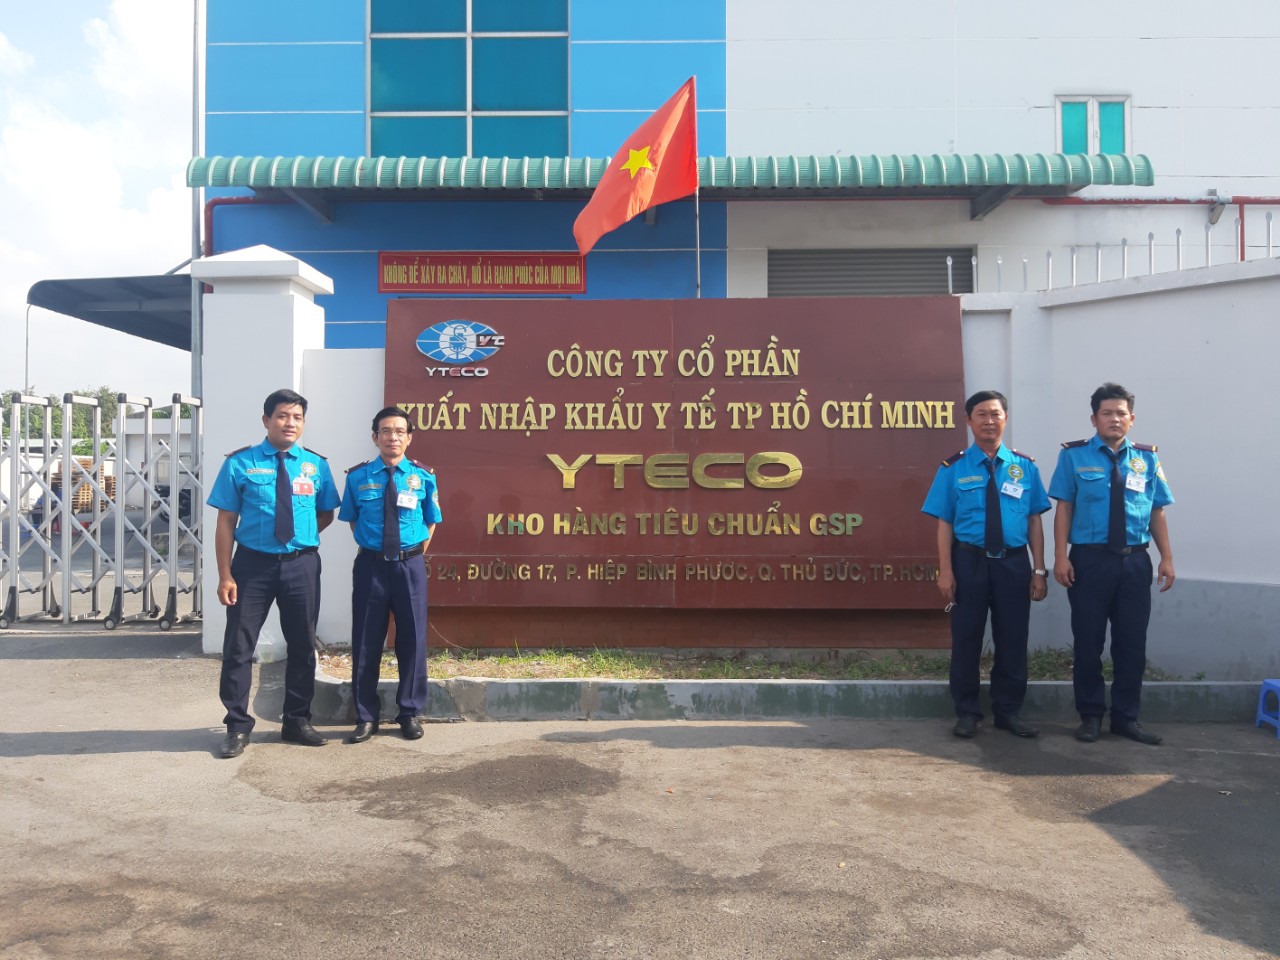 Cung cấp dịch vụ bảo vệ chuyên nghiệp cho Yteco - 2